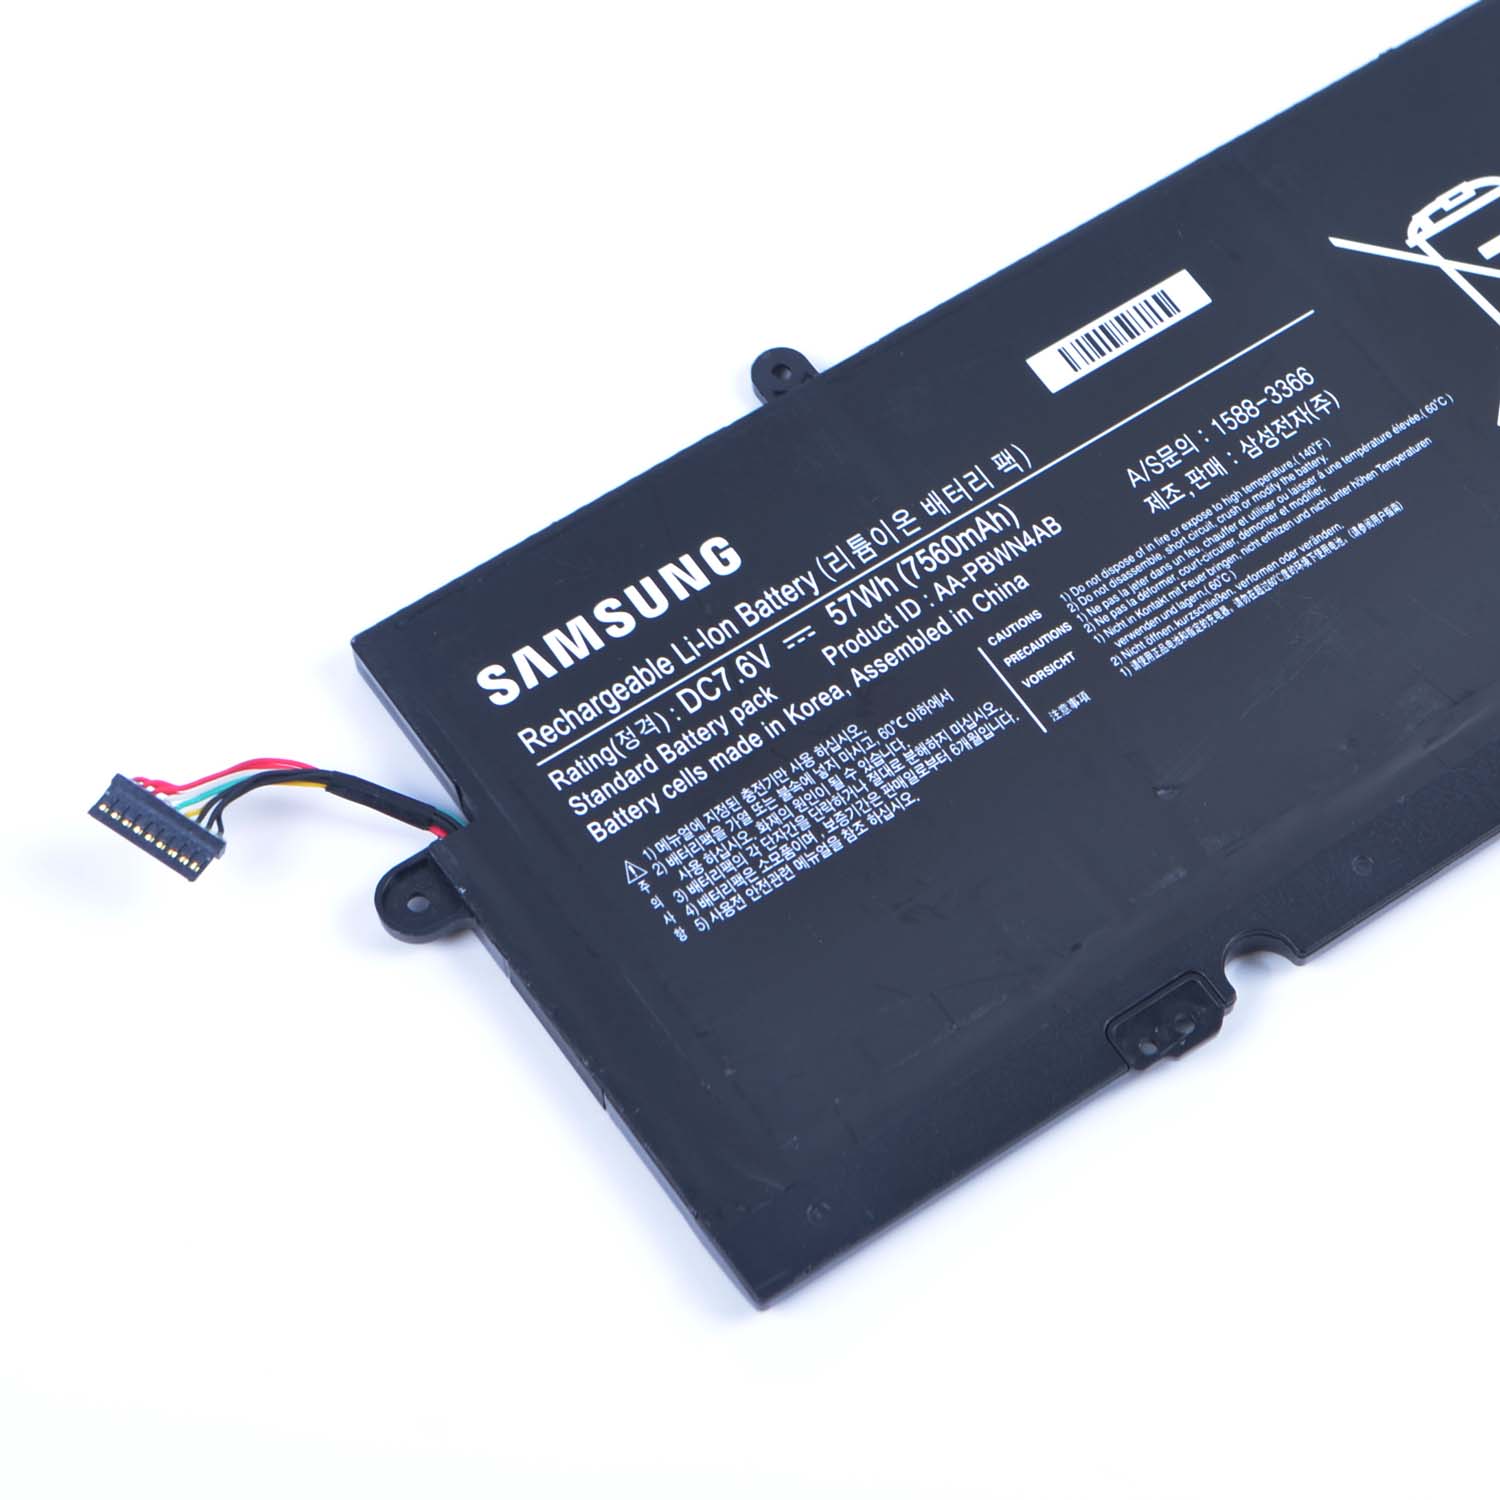 Samsung Samsung 730U3E-S04DE battery